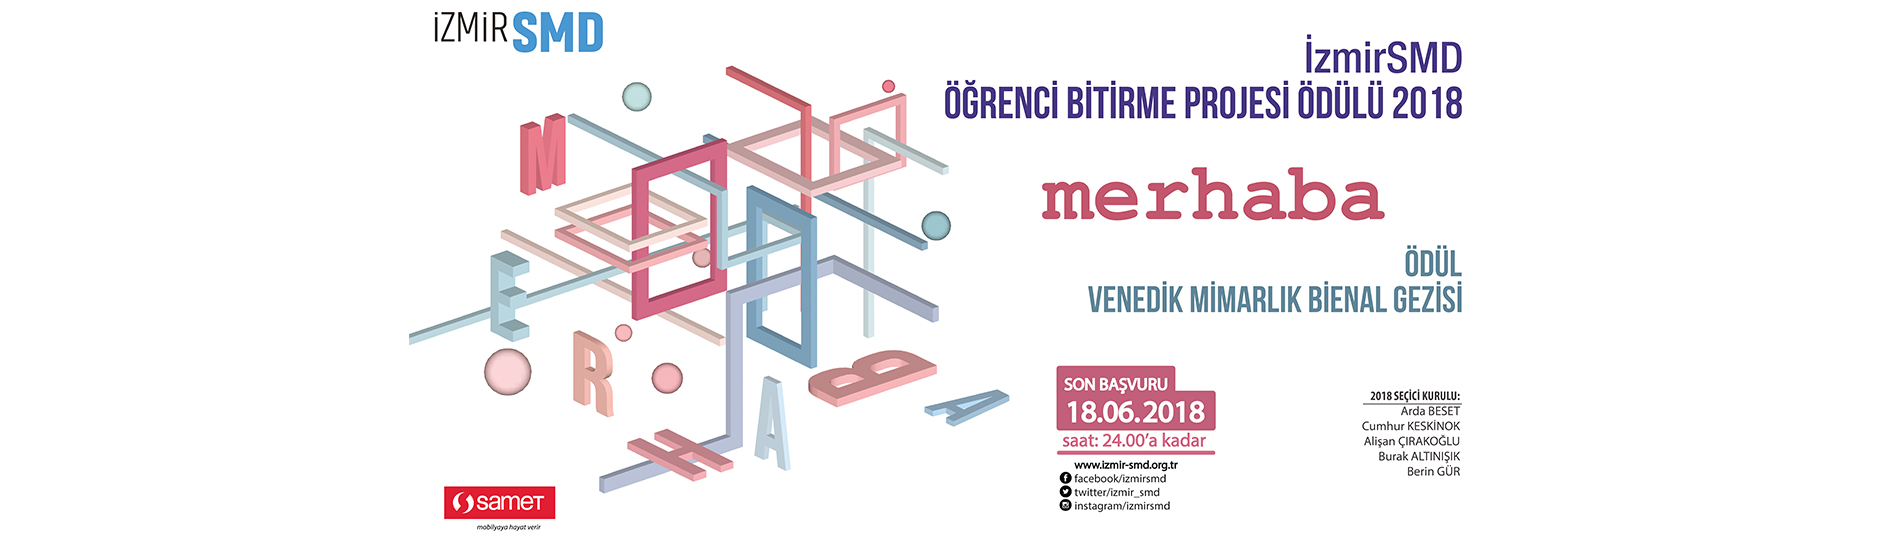 2018 Merhaba İzmirSMD Öğrenci Bitirme Projesi Ödülü